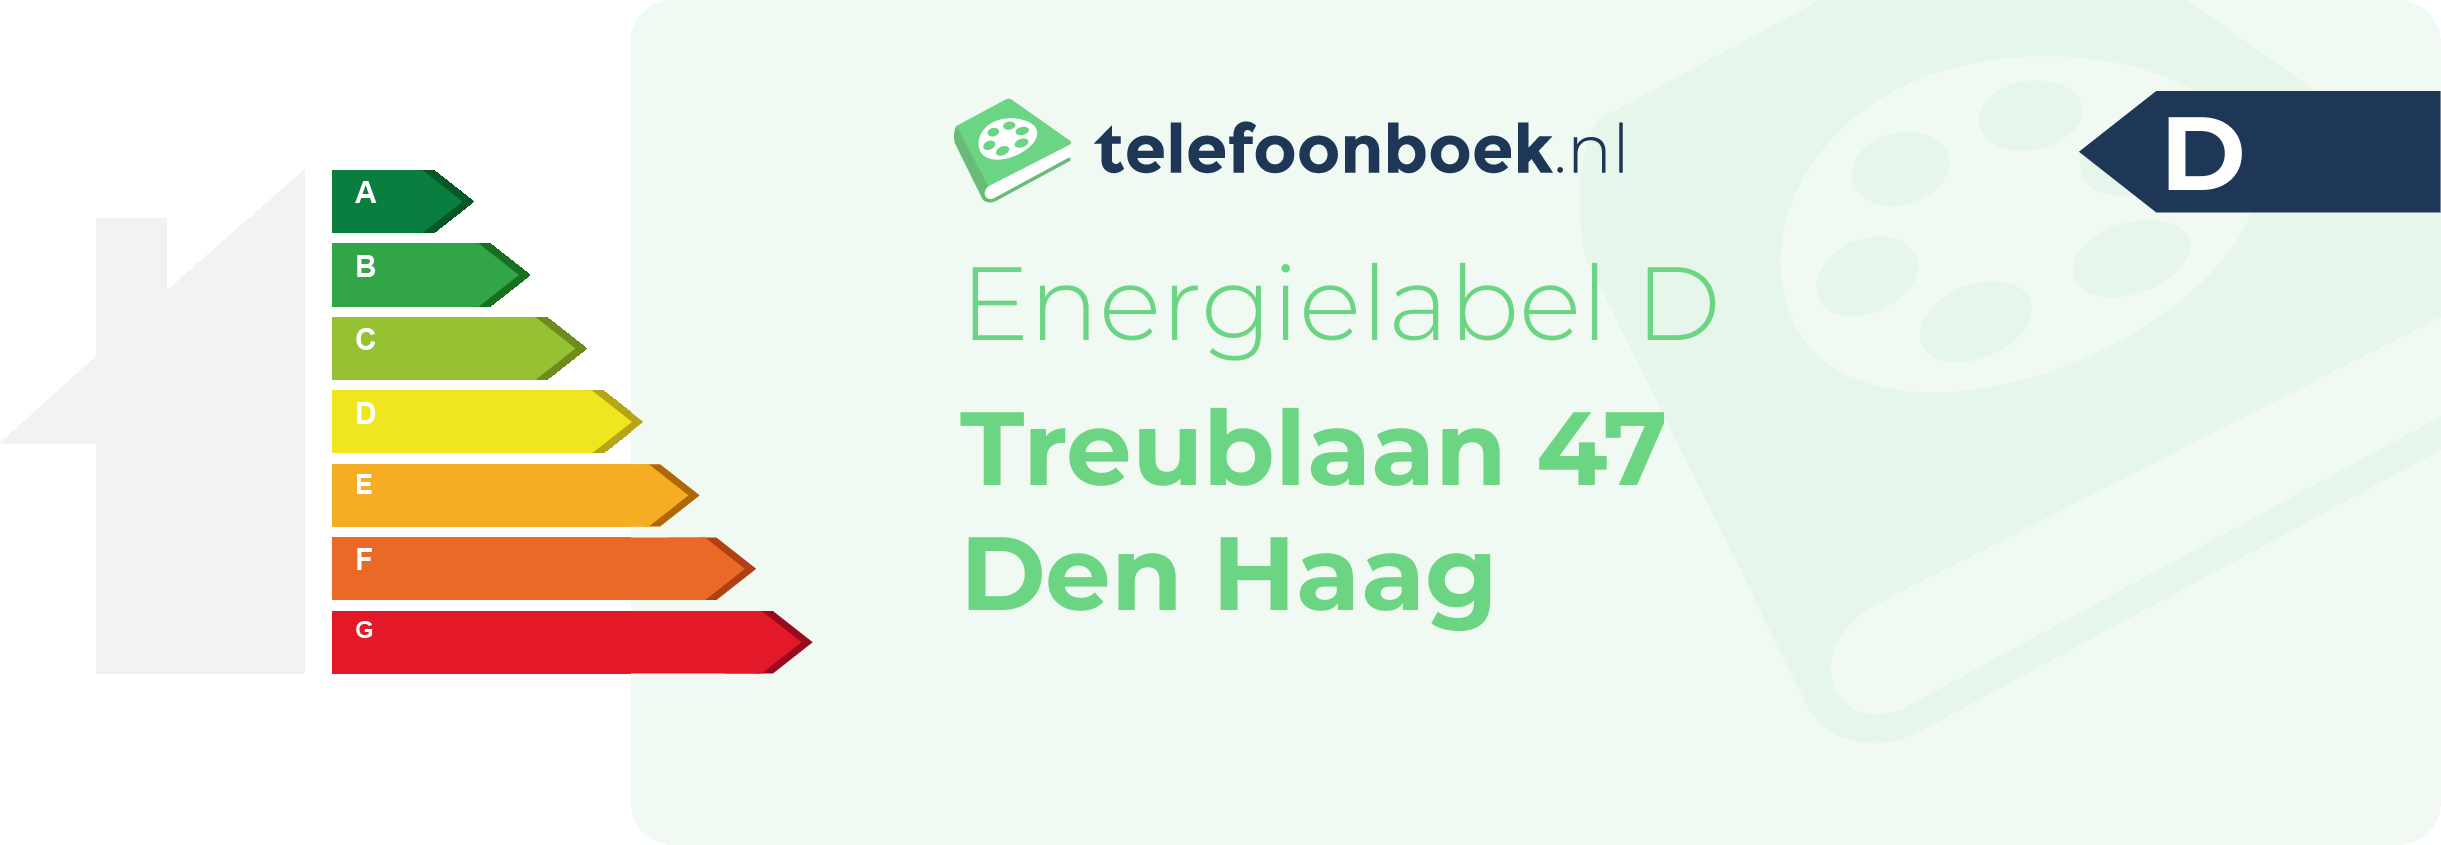 Energielabel Treublaan 47 Den Haag